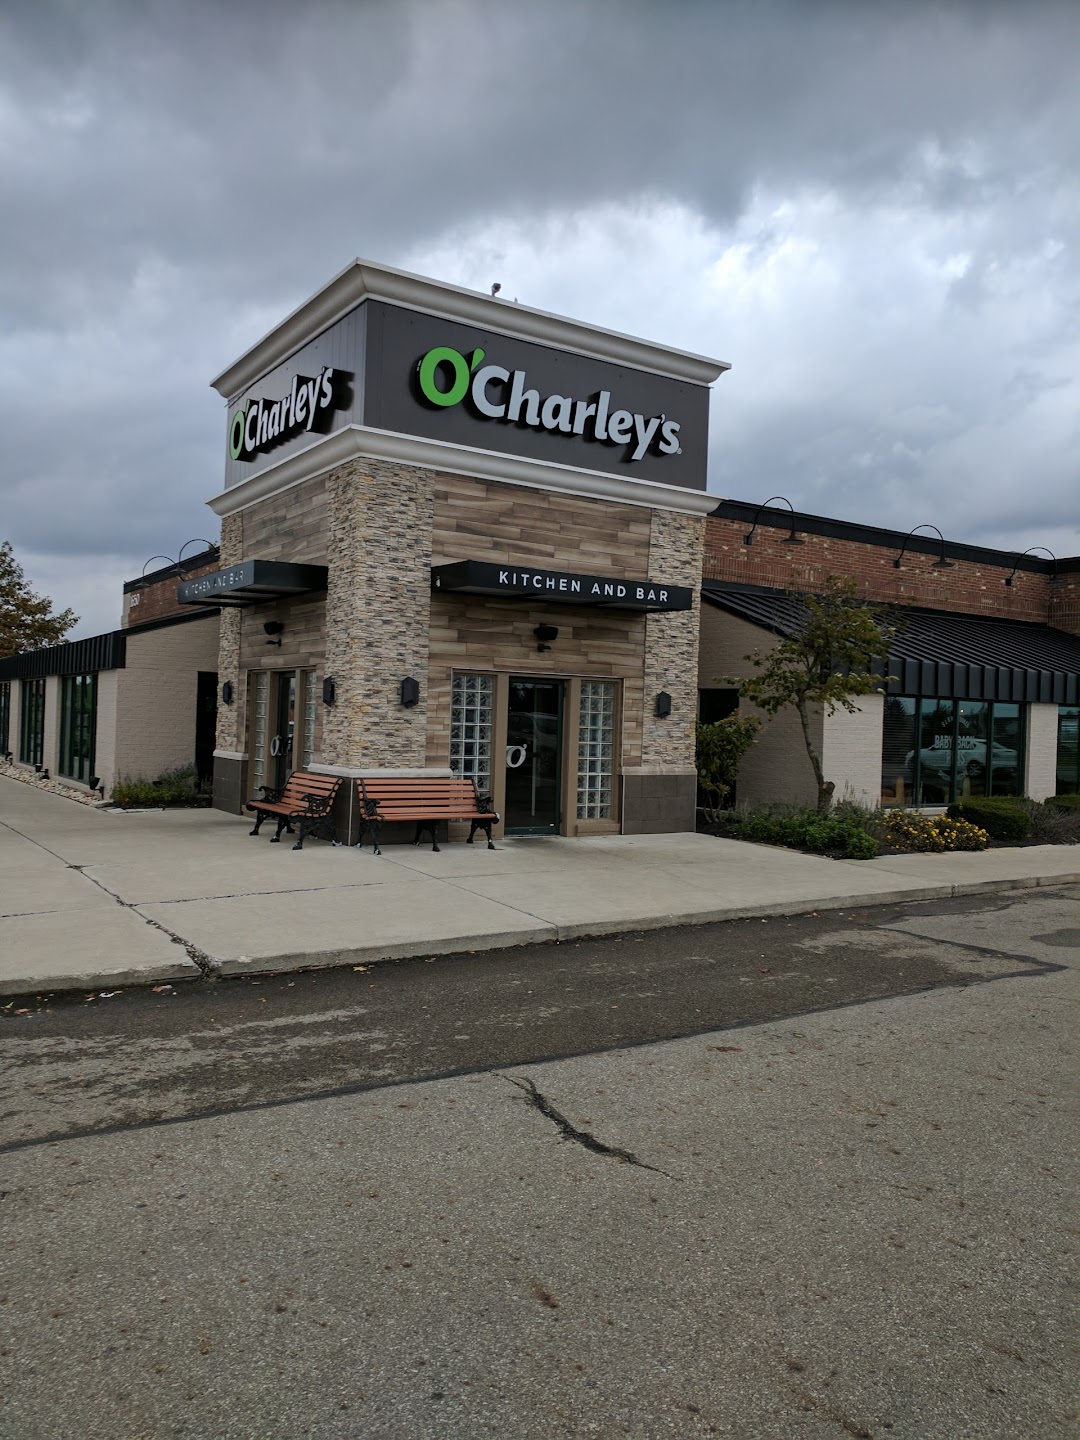 OCharleys Restaurant & Bar